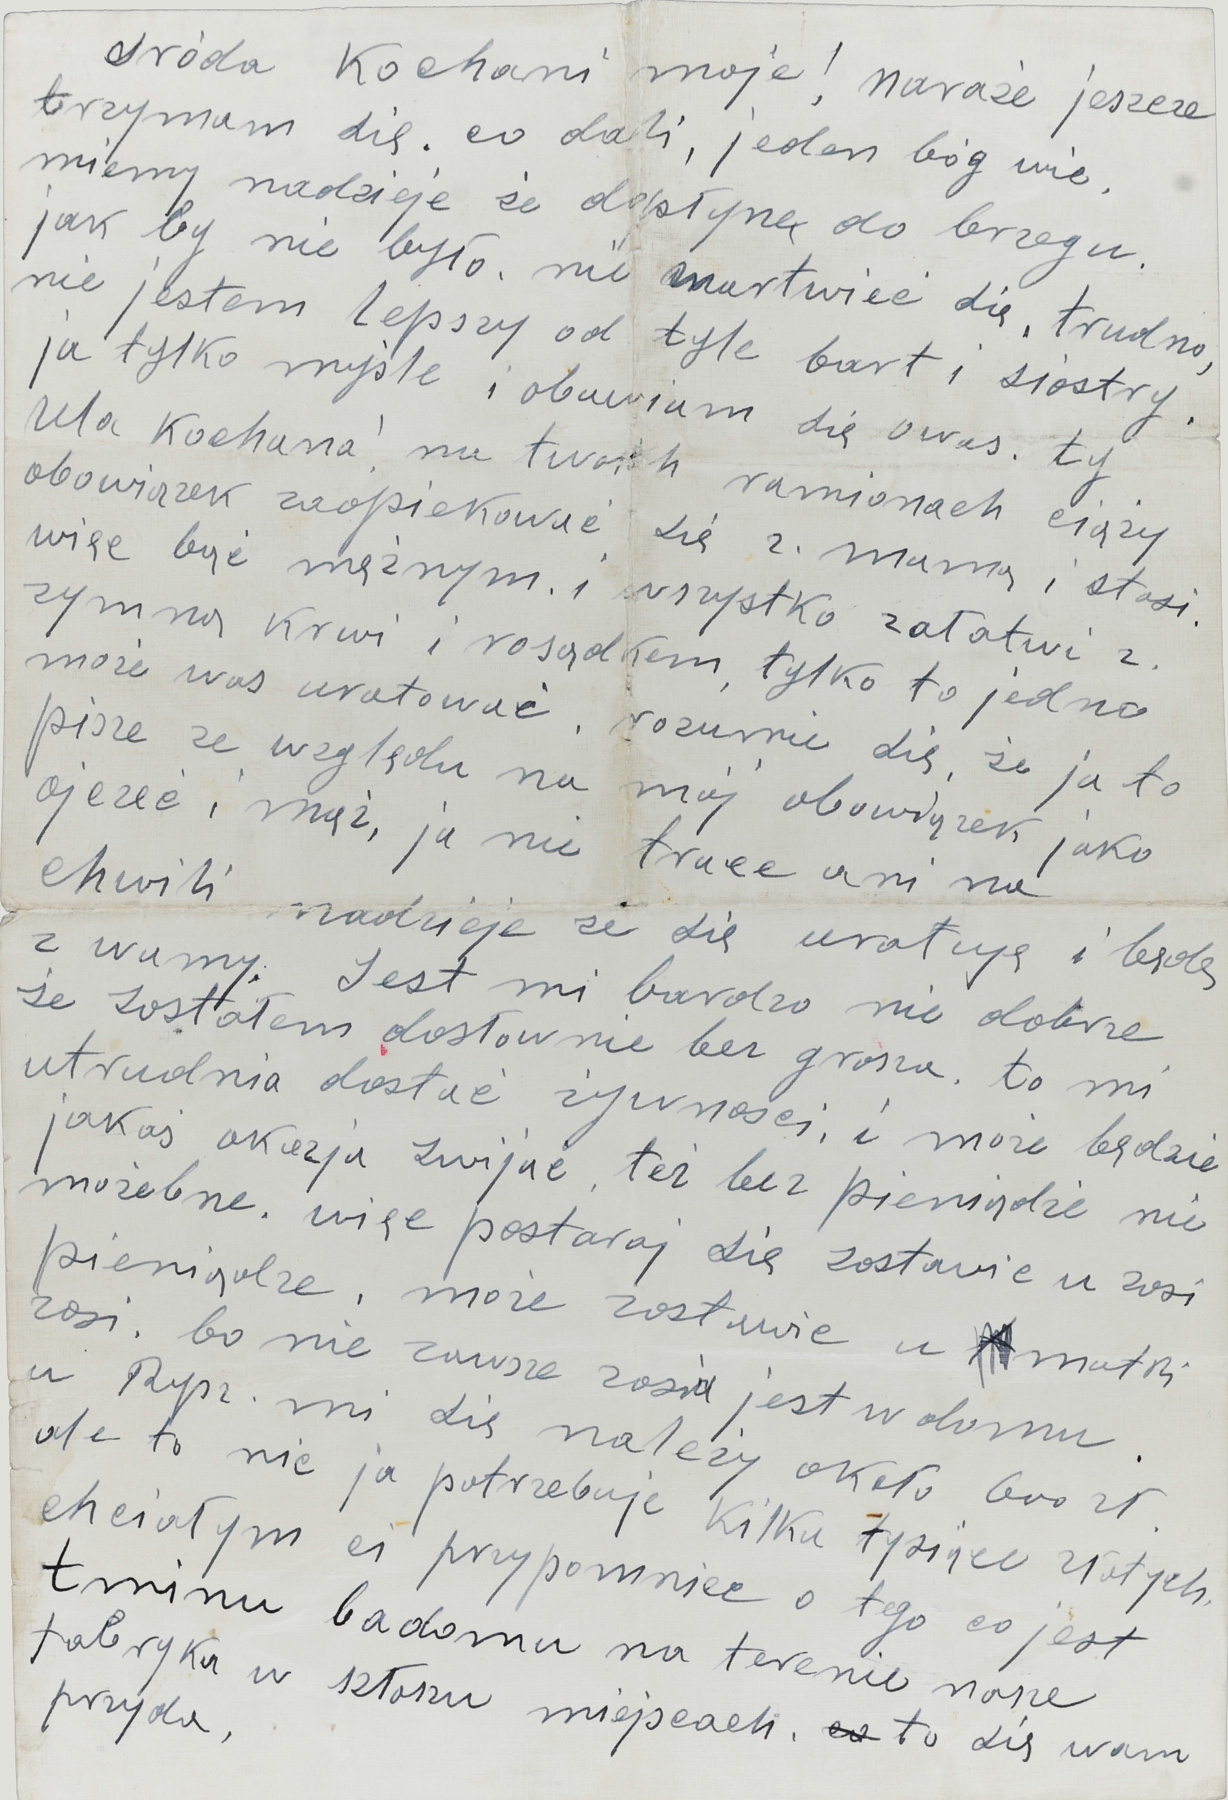 The Last Letter from Moshe Ekhajzer